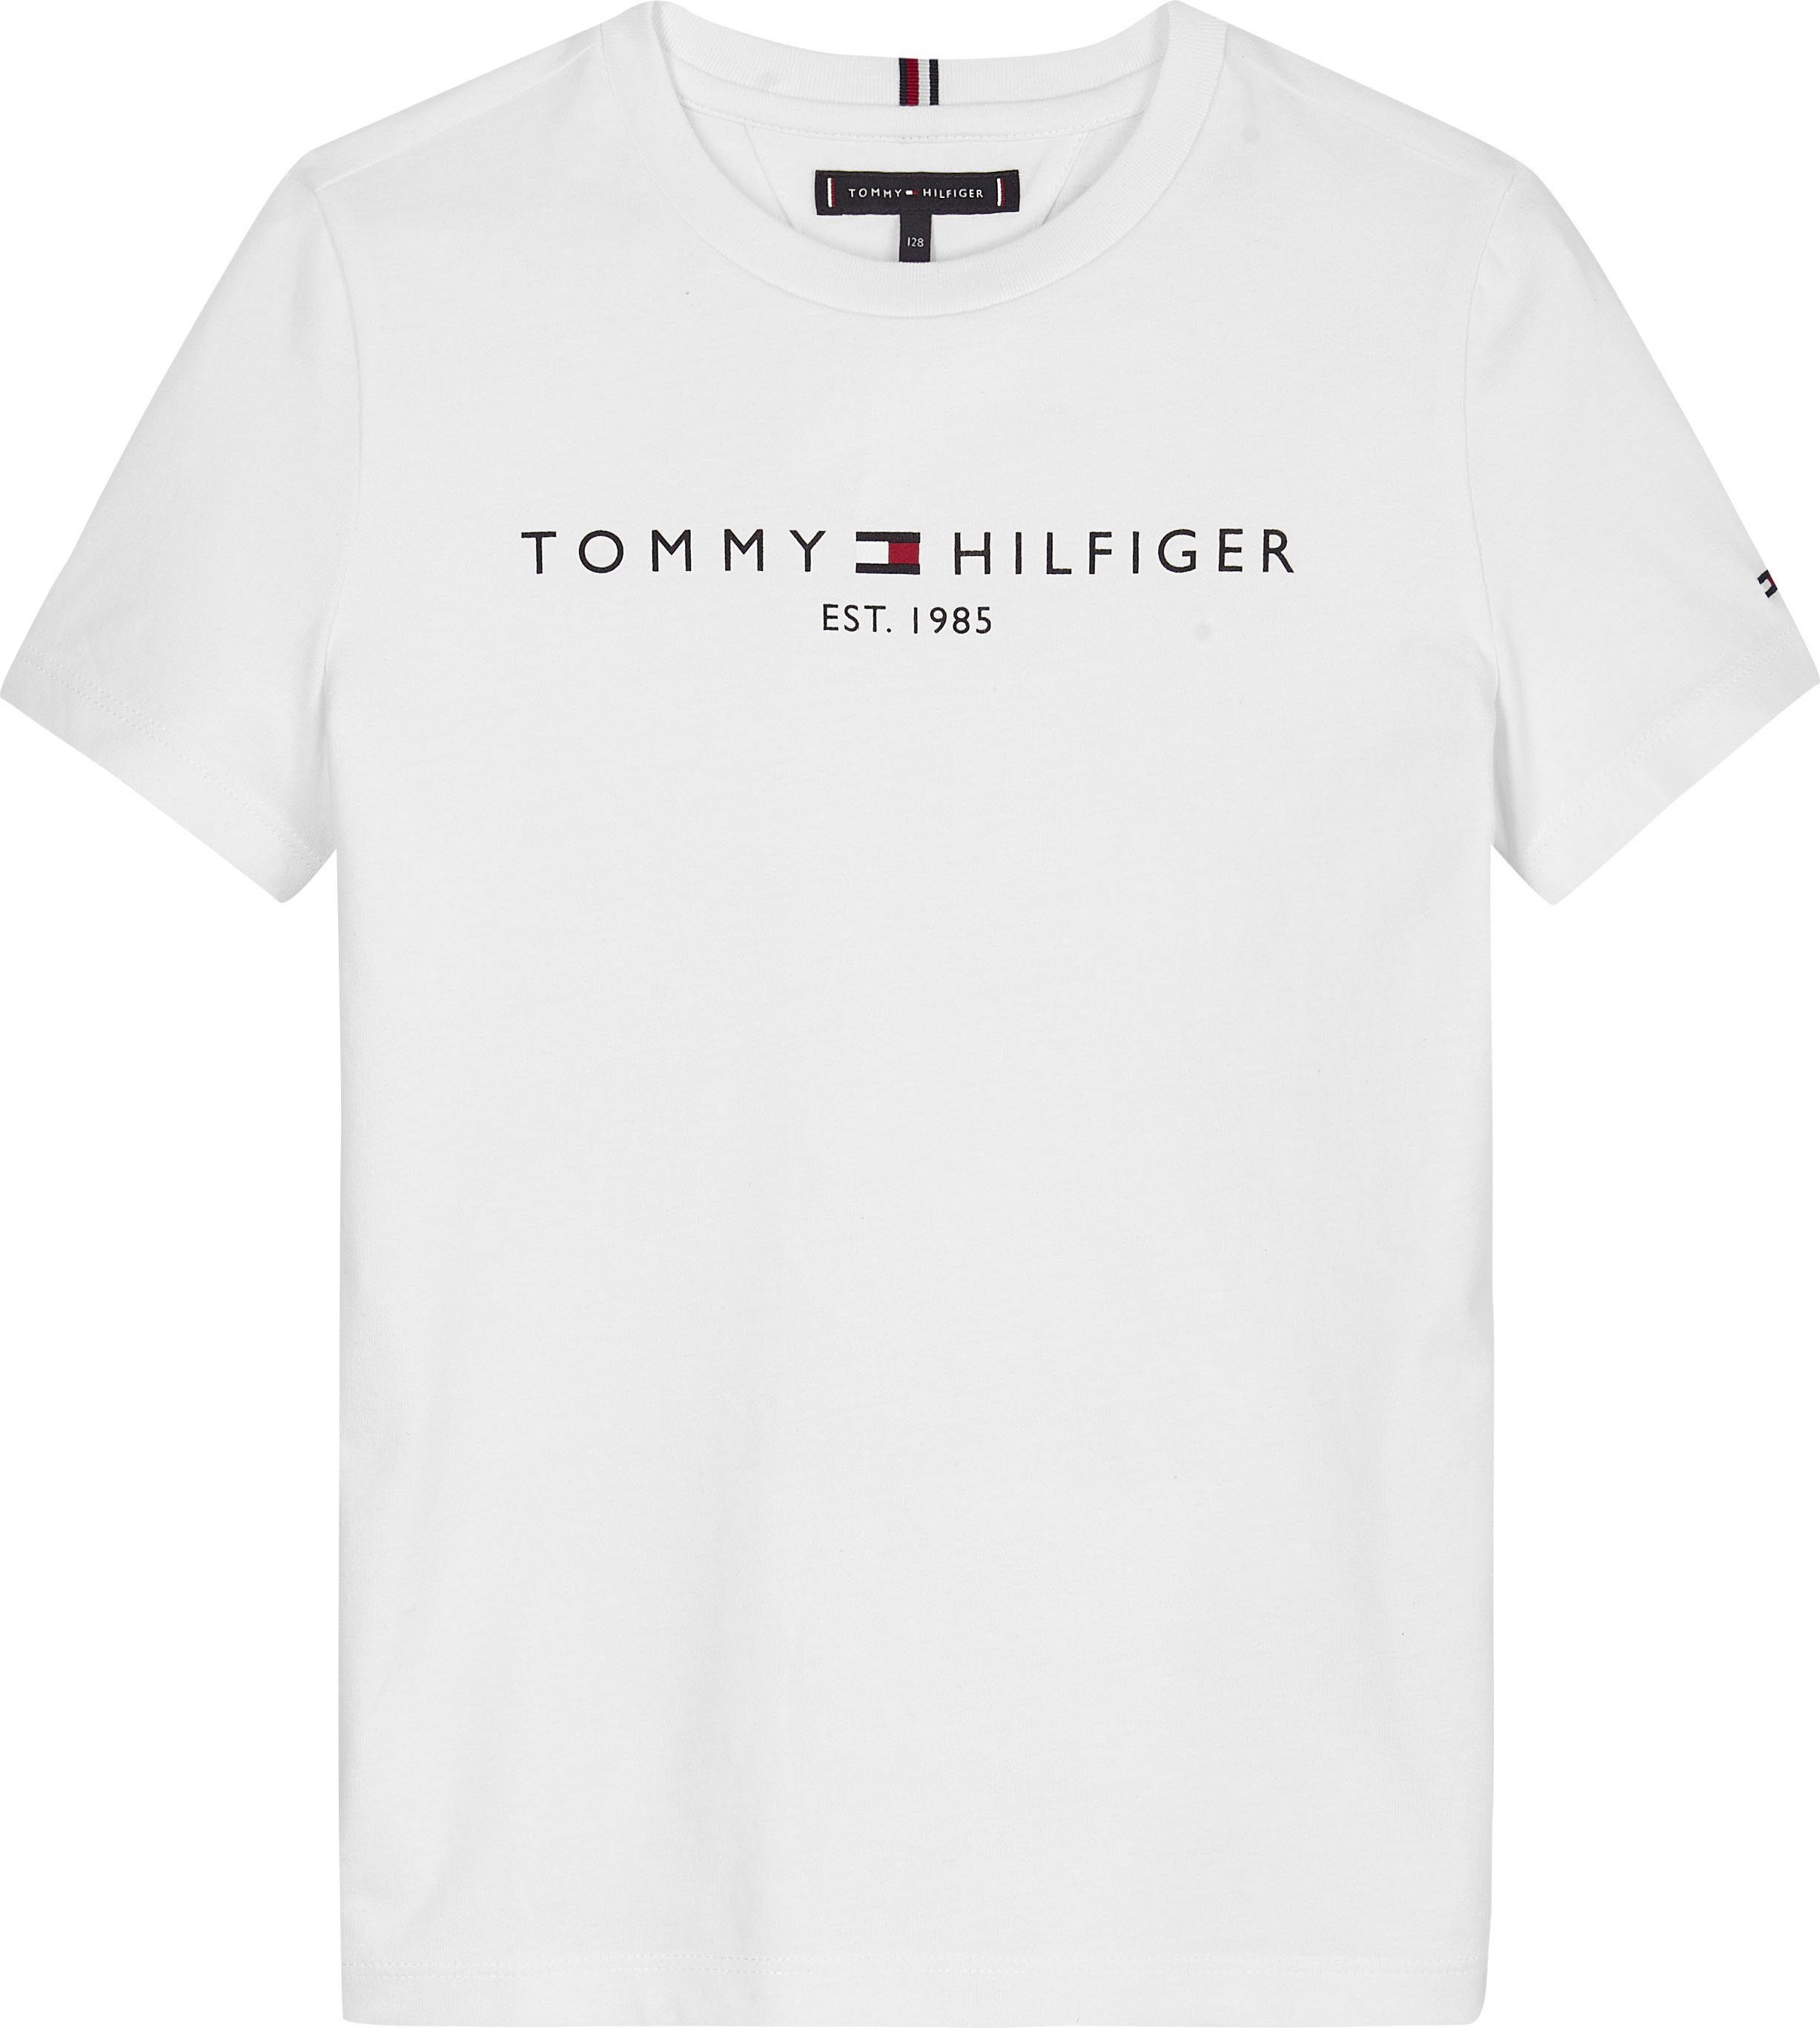 Tommy Hilfiger T-Shirt Kids Jungen MiniMe,für und TEE ESSENTIAL Junior Mädchen Kinder